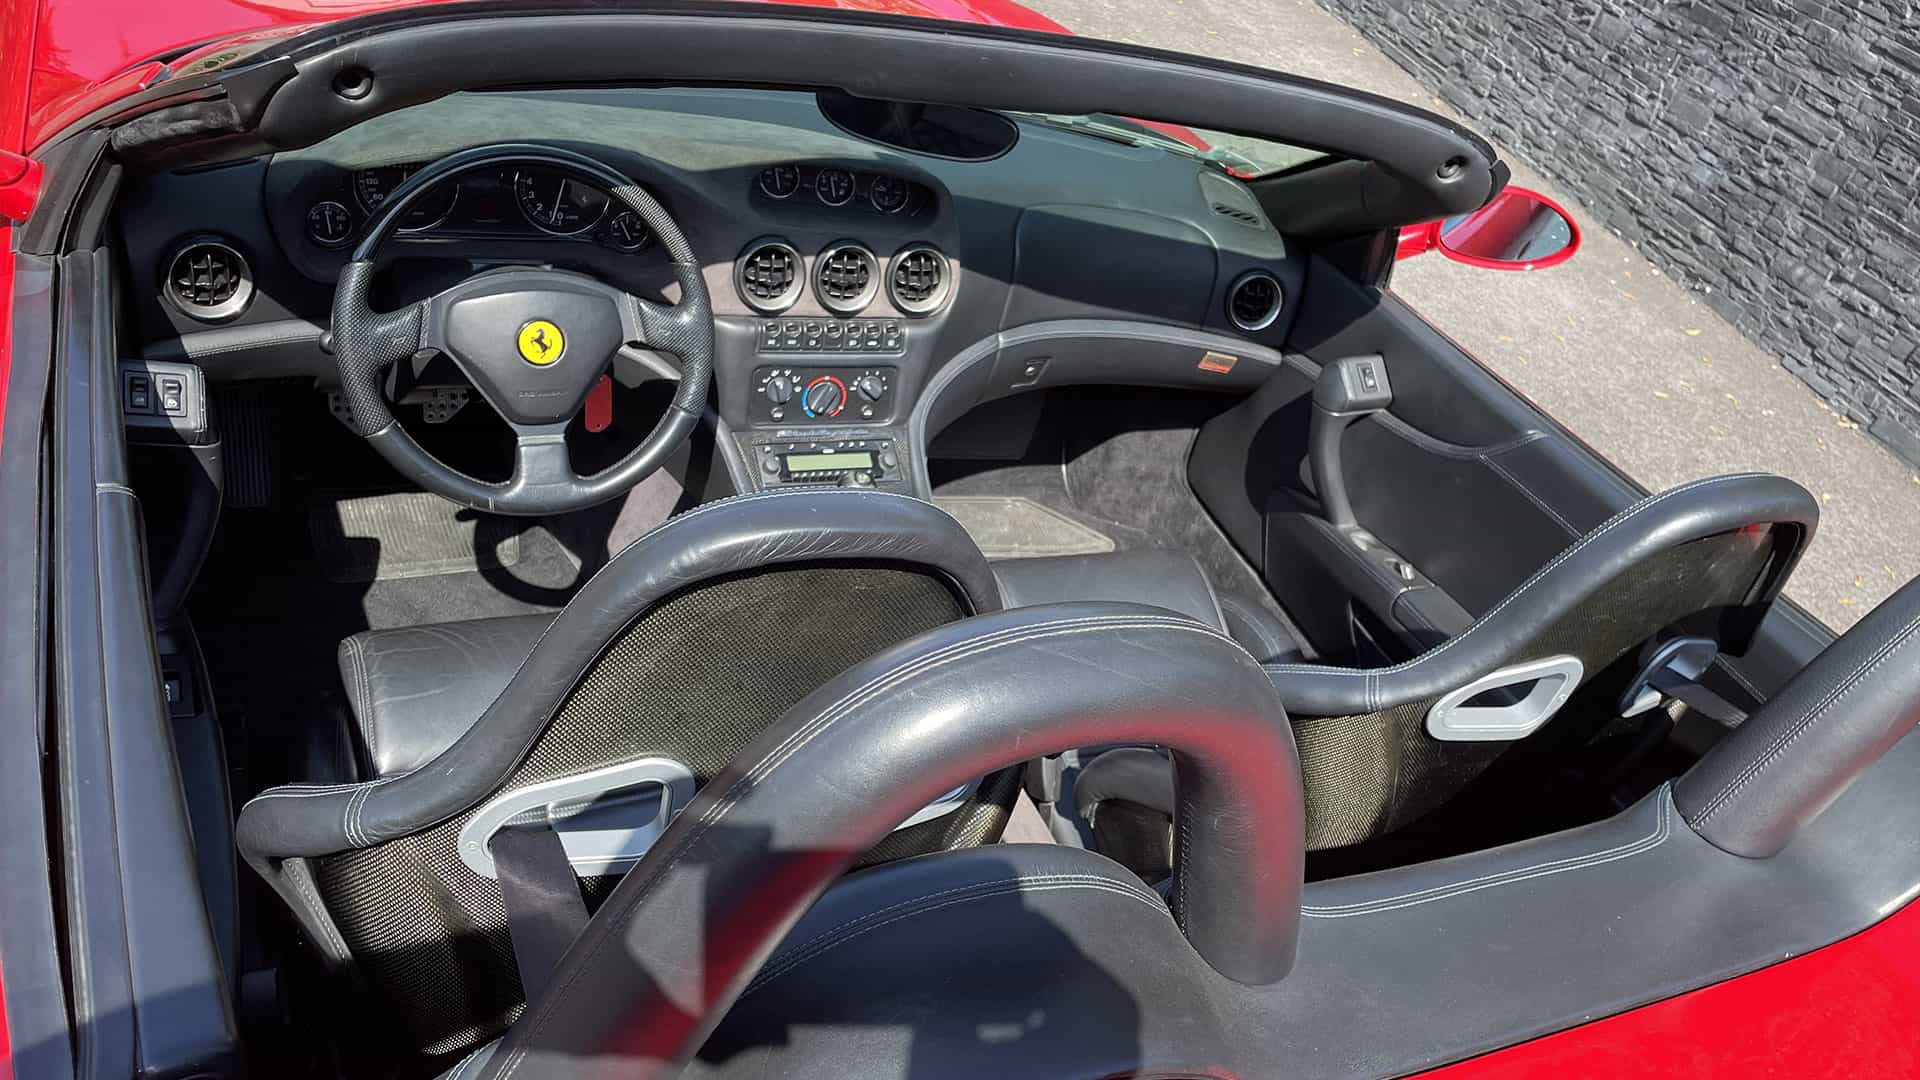 Interior view of Ferrari 550 Barchetta